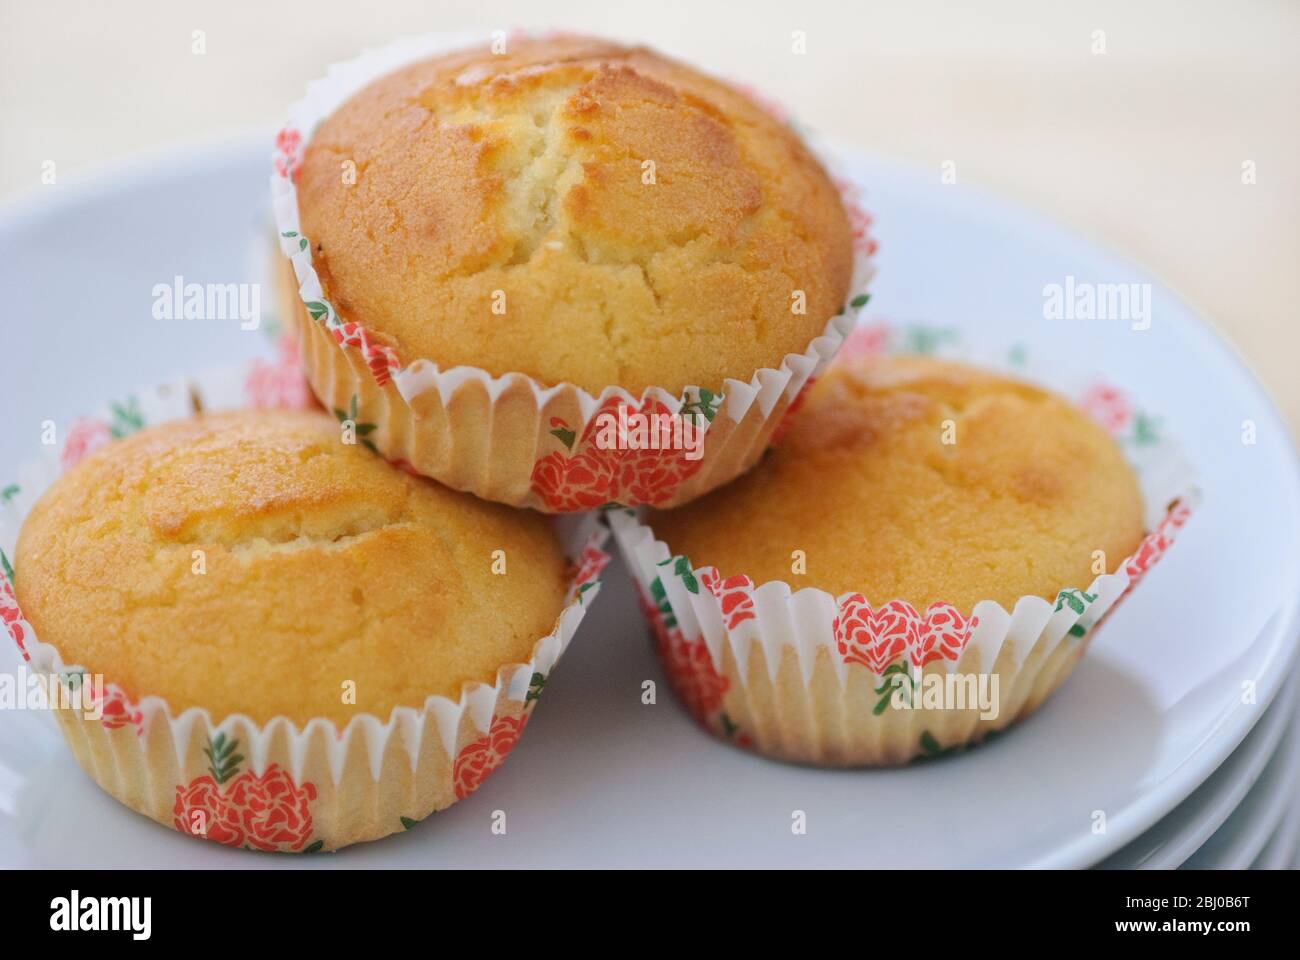 Muffin nach portugiesischem Bollo de Arroz Rezept, hergestellt mit Reismehl und glutenfreiem Mehl - Stockfoto